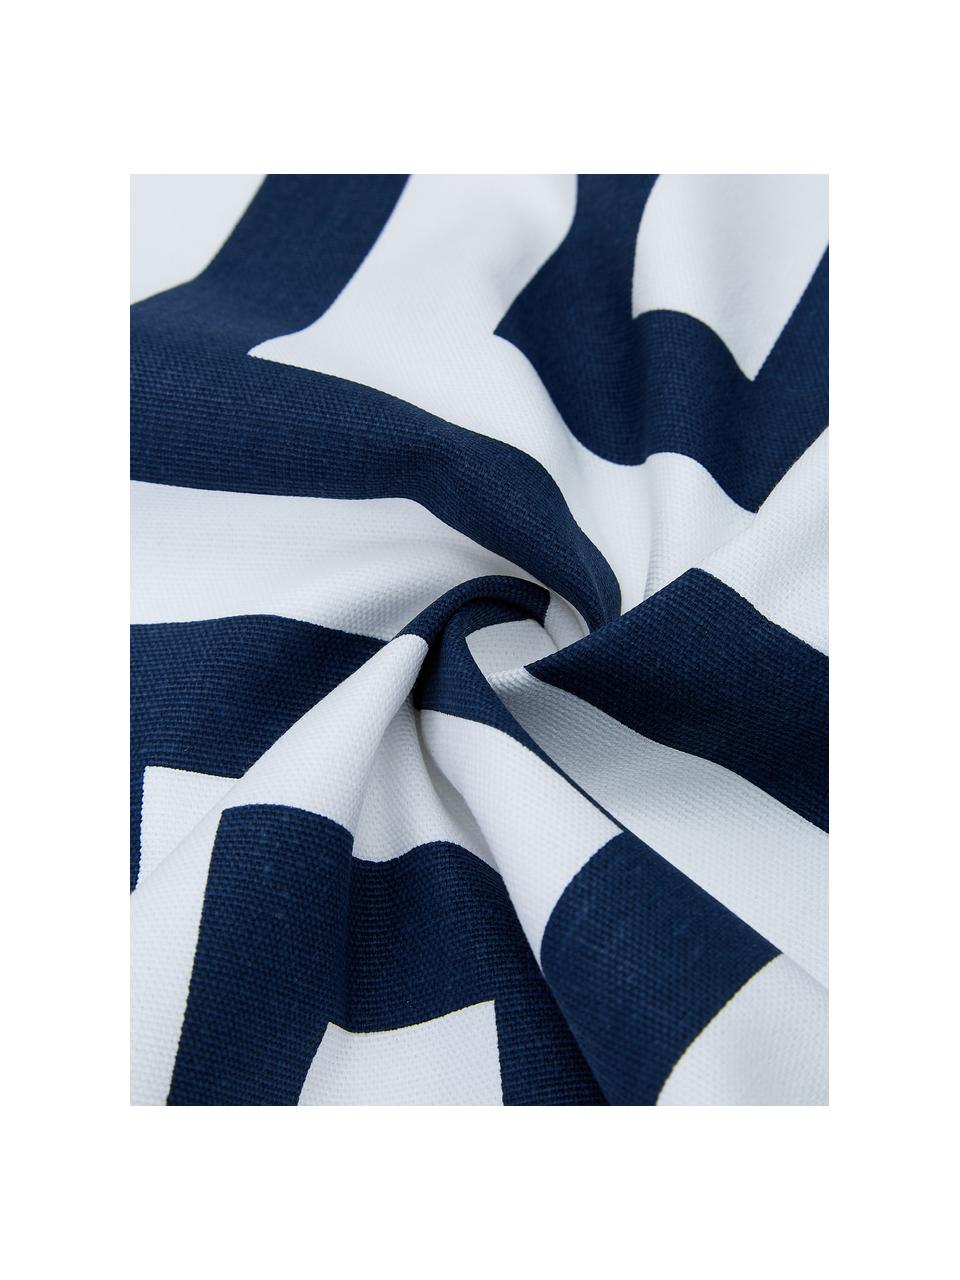 Poszewka na poduszkę Bram, 100% bawełna, Biały, ciemny niebieski, S 45 x D 45 cm